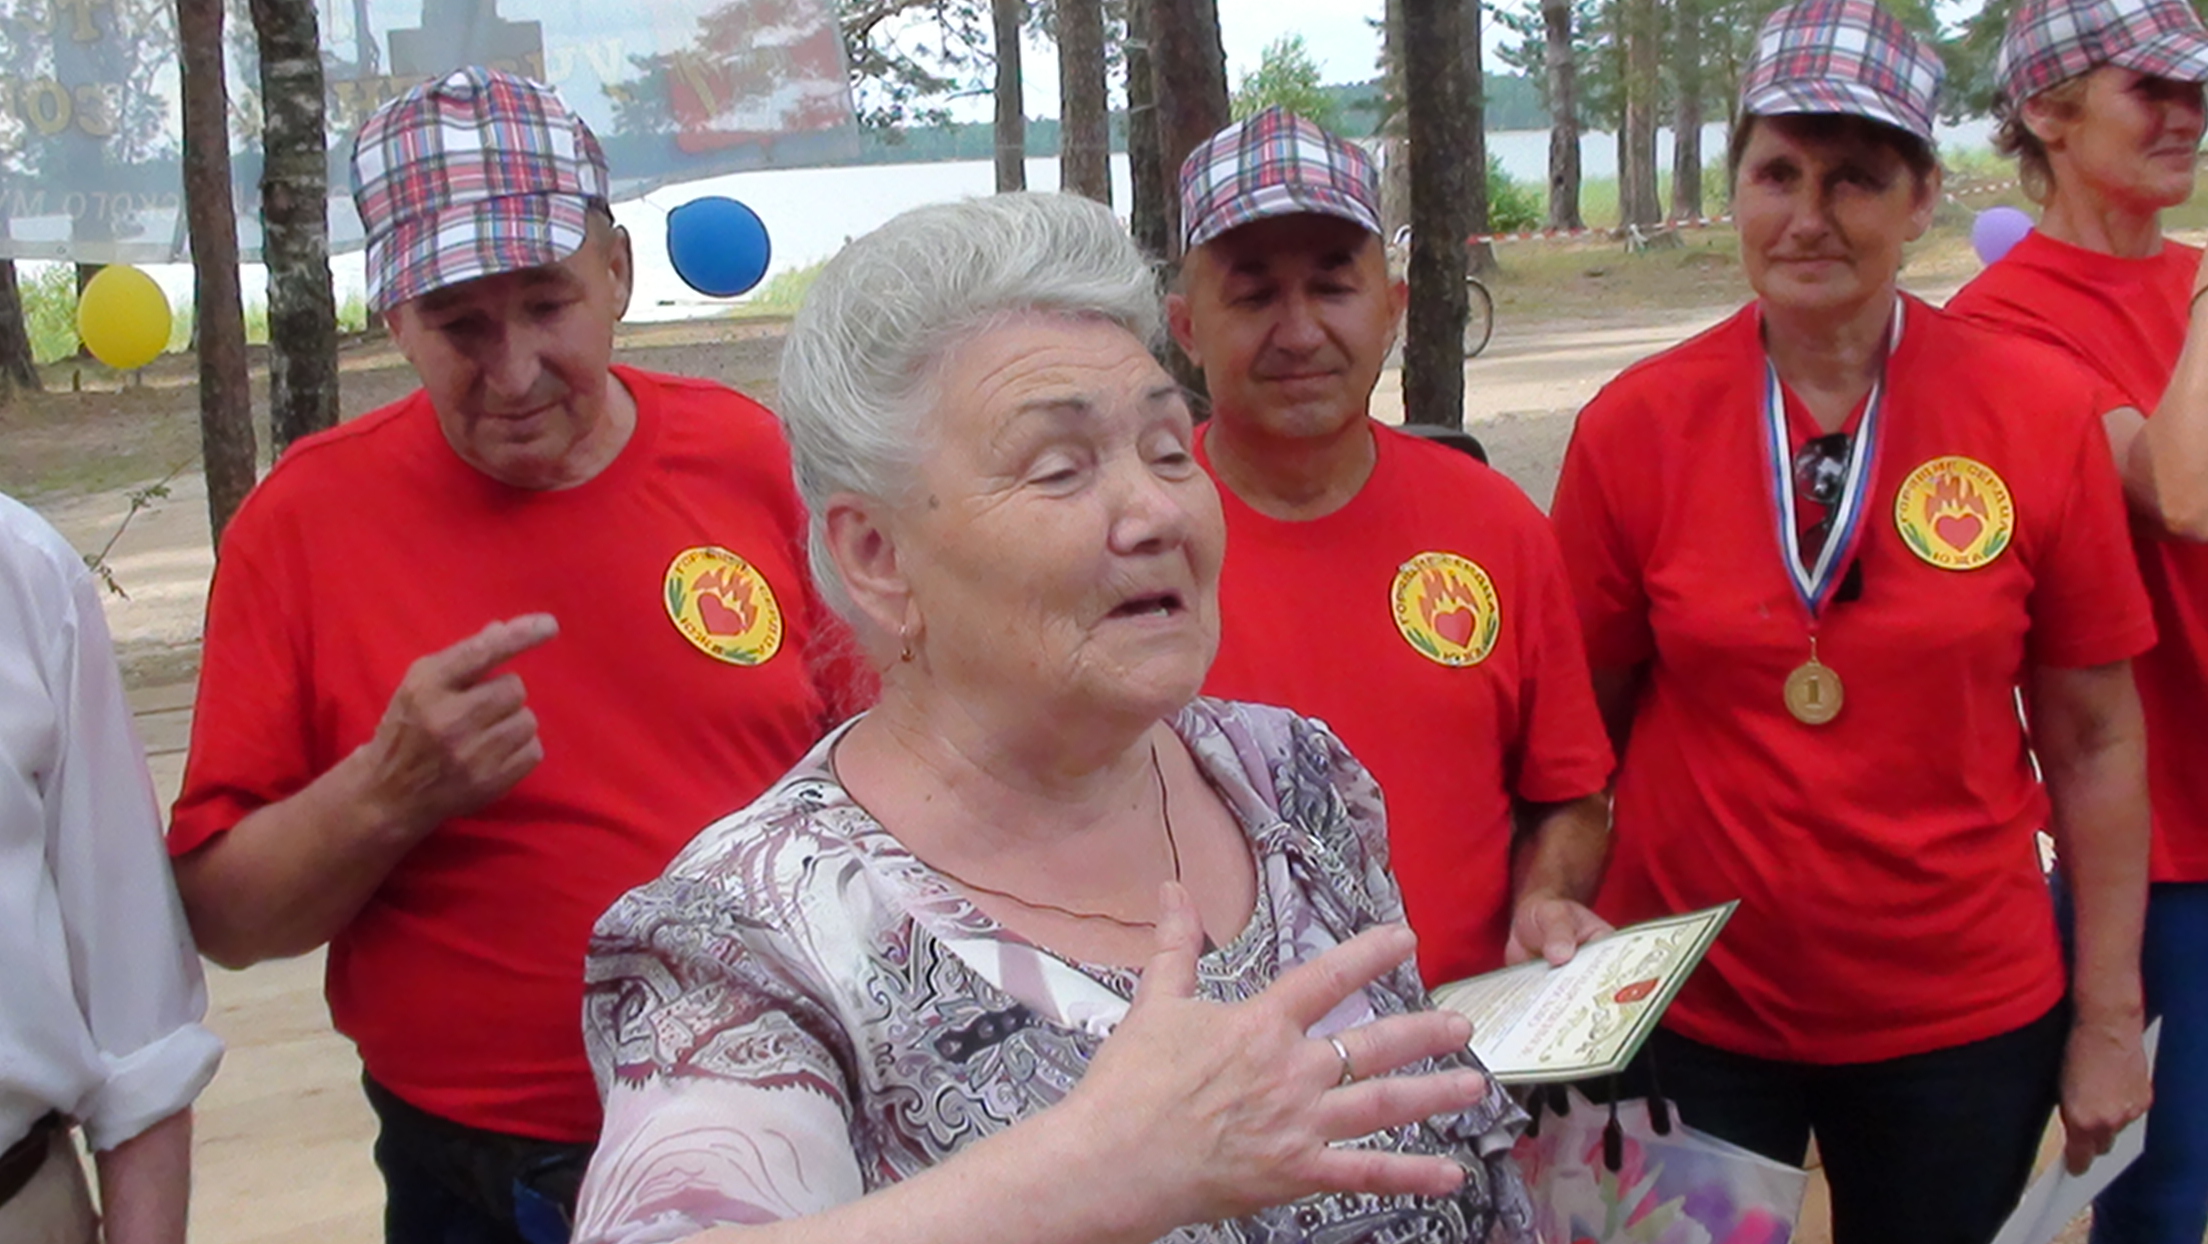 Первый областной туристический  слет ветеранов «Люди пожилые  — сердцем молодые». 